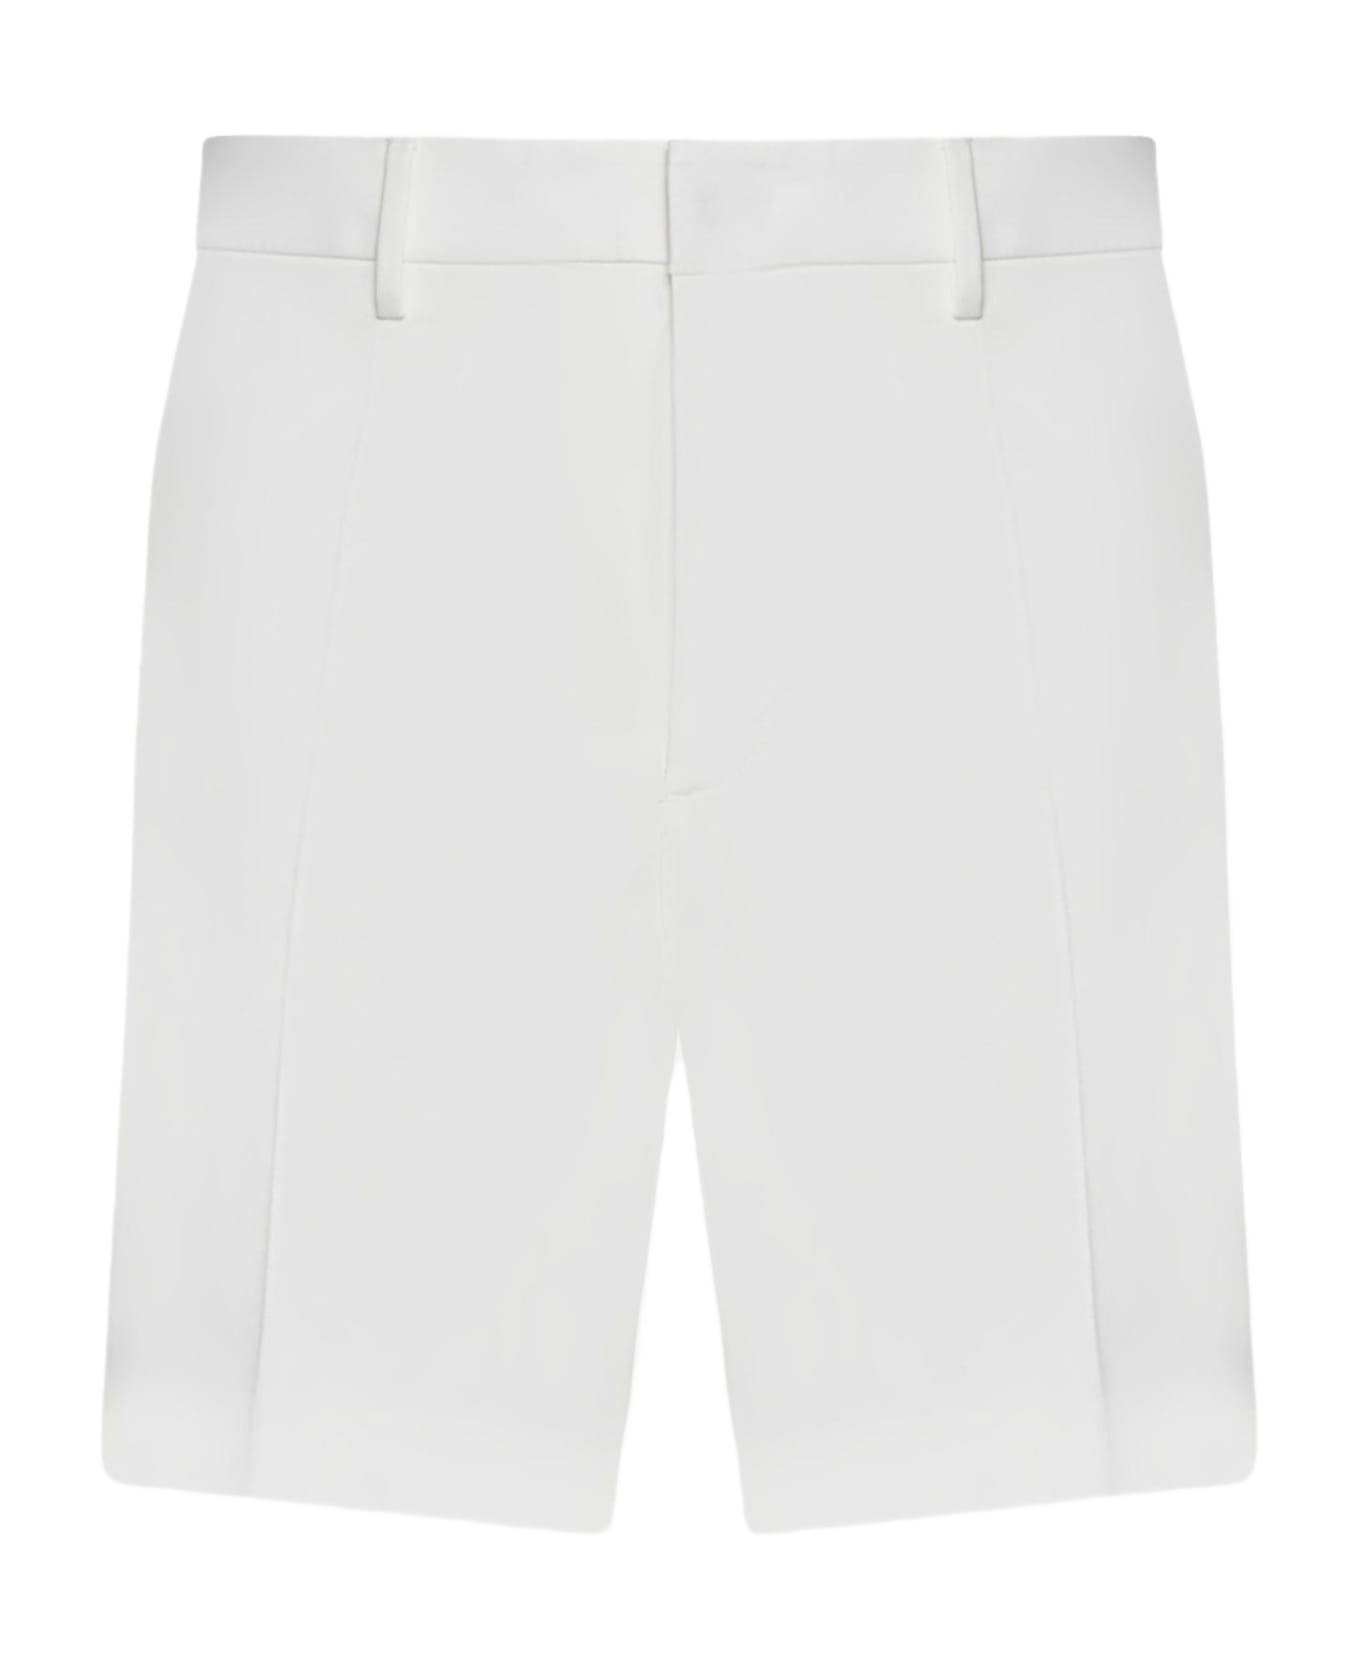 Valentino Garavani Bermuda Shorts - White